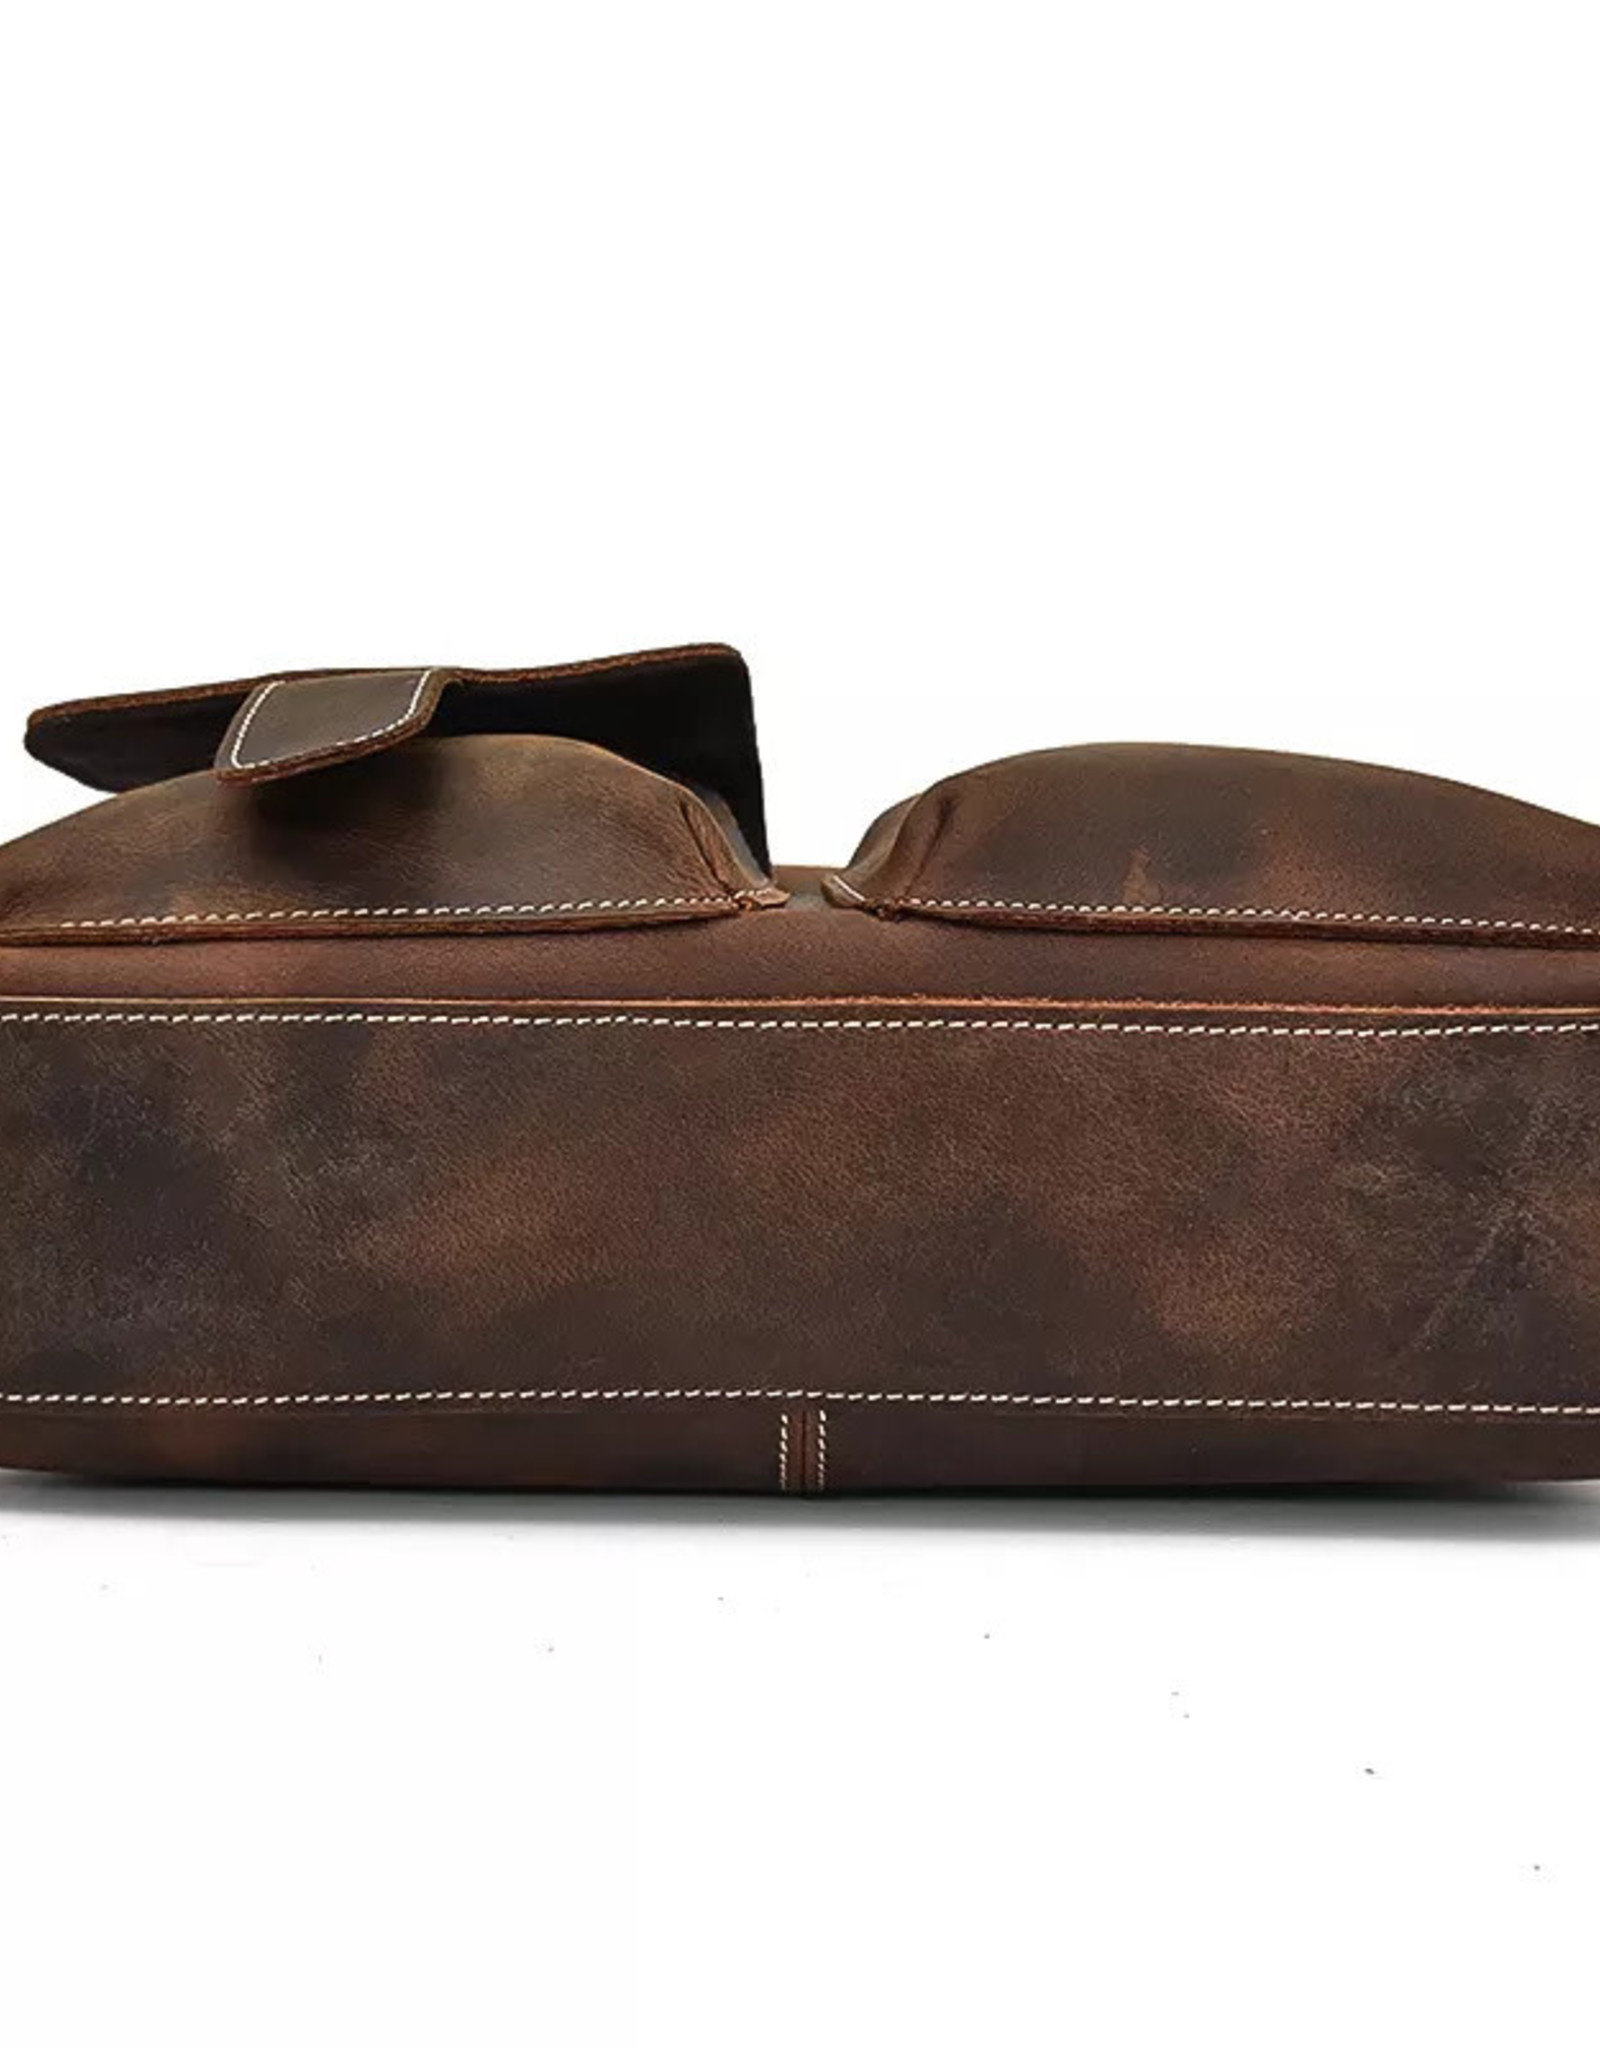 Harrison Shoulder Strap Bag Genuine Leather